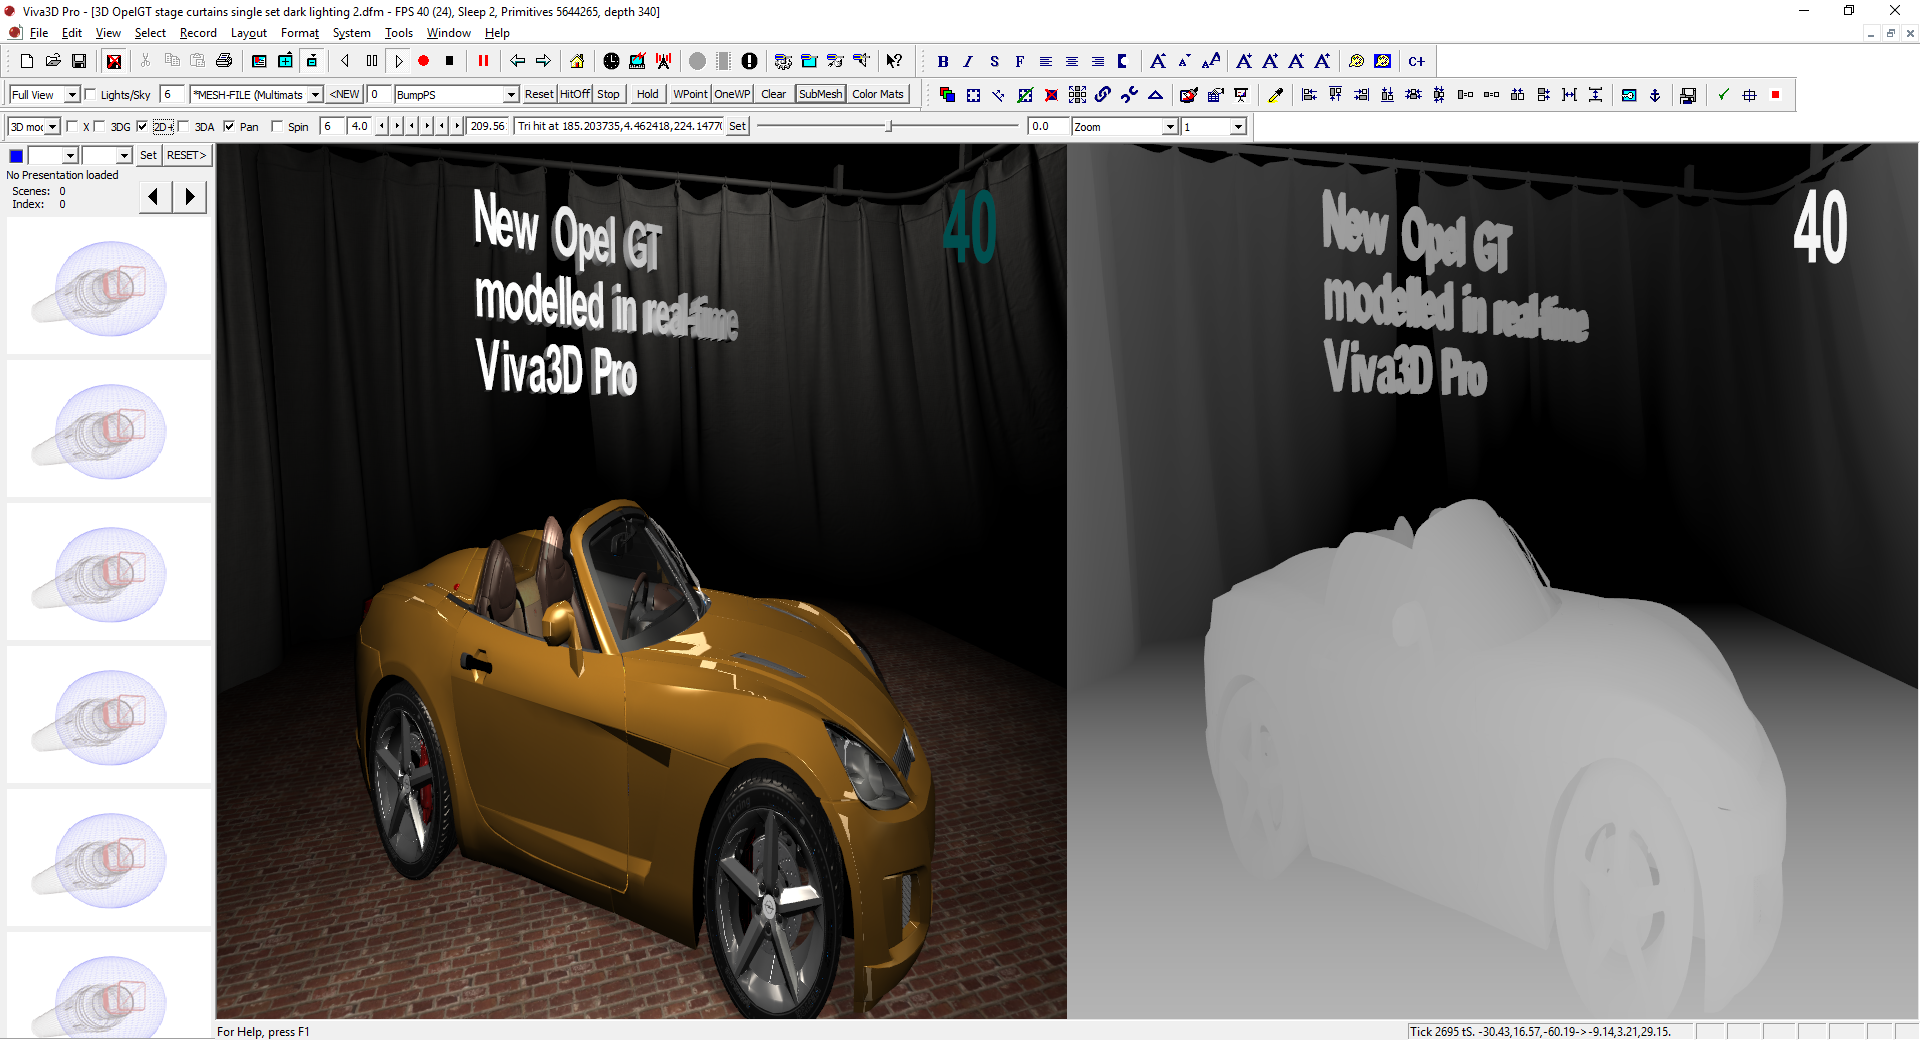 OpelGT rendered in Viva3D Pro in 2d+Depth